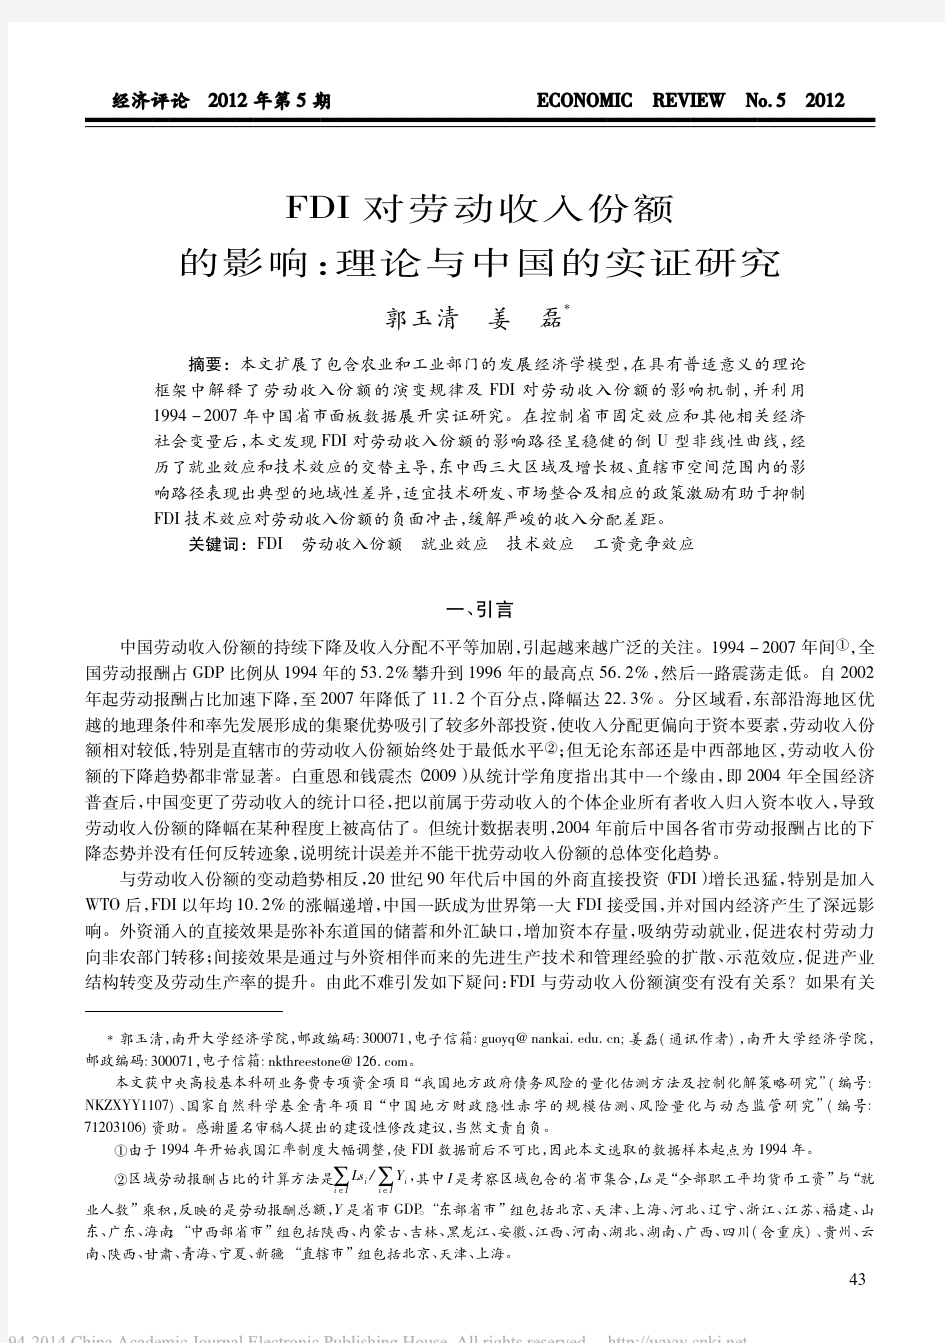 FDI对劳动收入份额的影响_理论与中国的实证研究_郭玉清